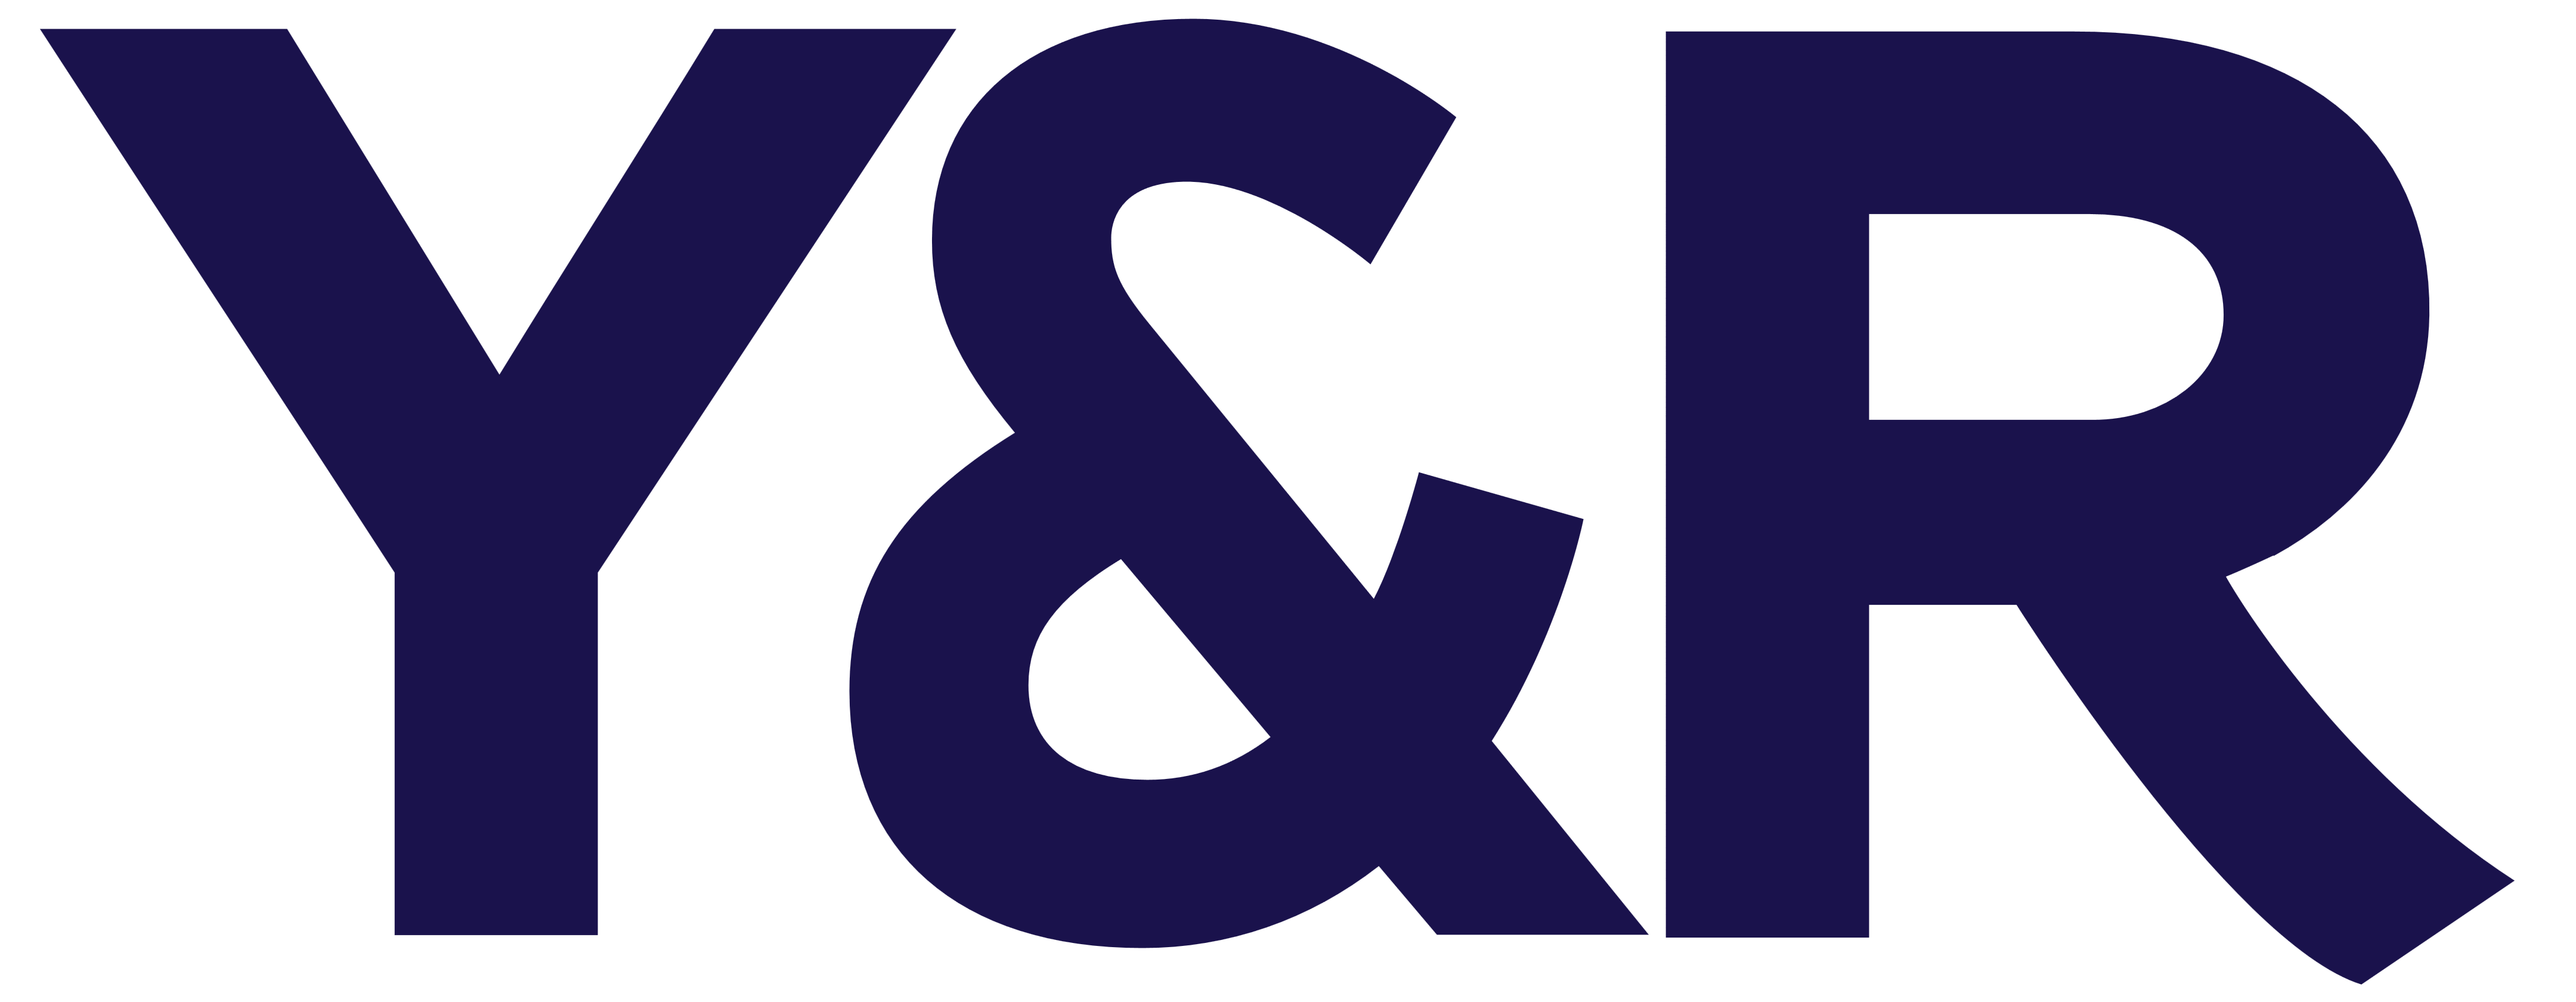 Y&R Brand Logo